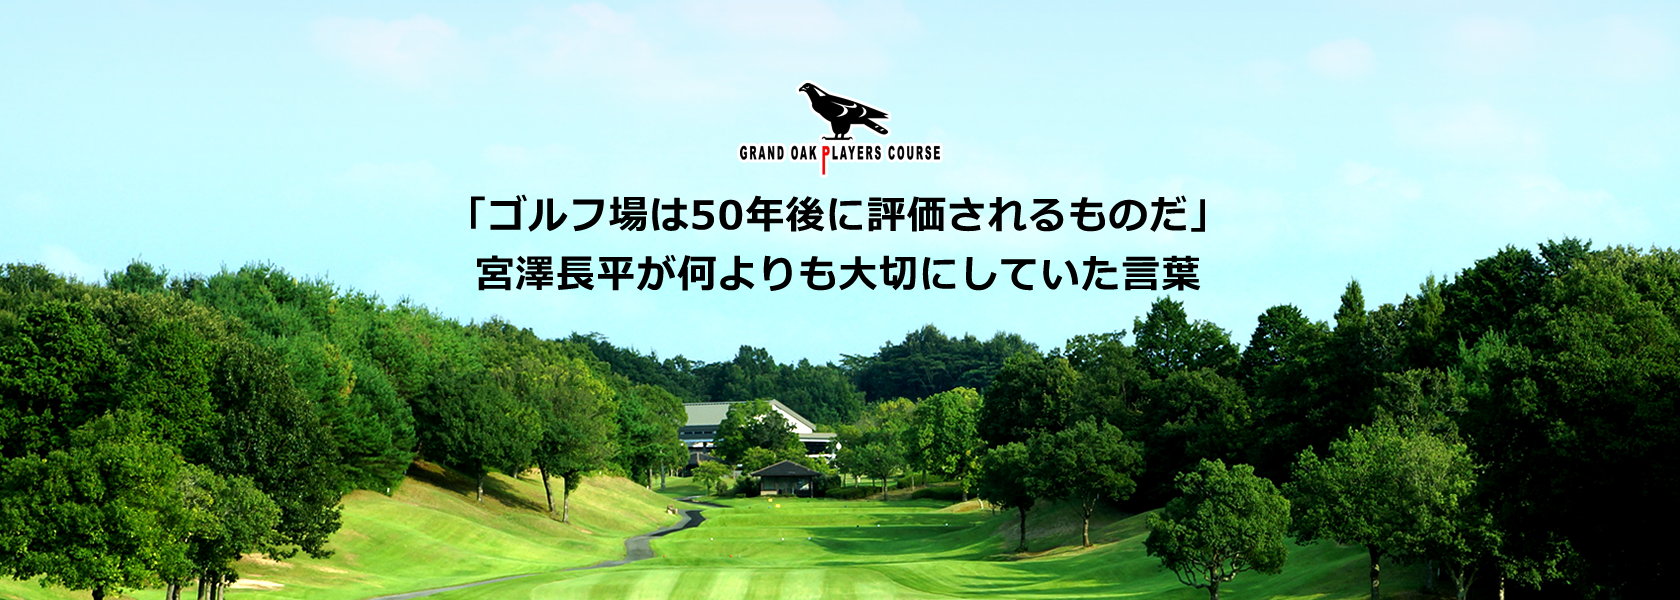 「ゴルフ場は50年後に評価されるものだ」 宮澤長平が何よりも大切にしていた言葉